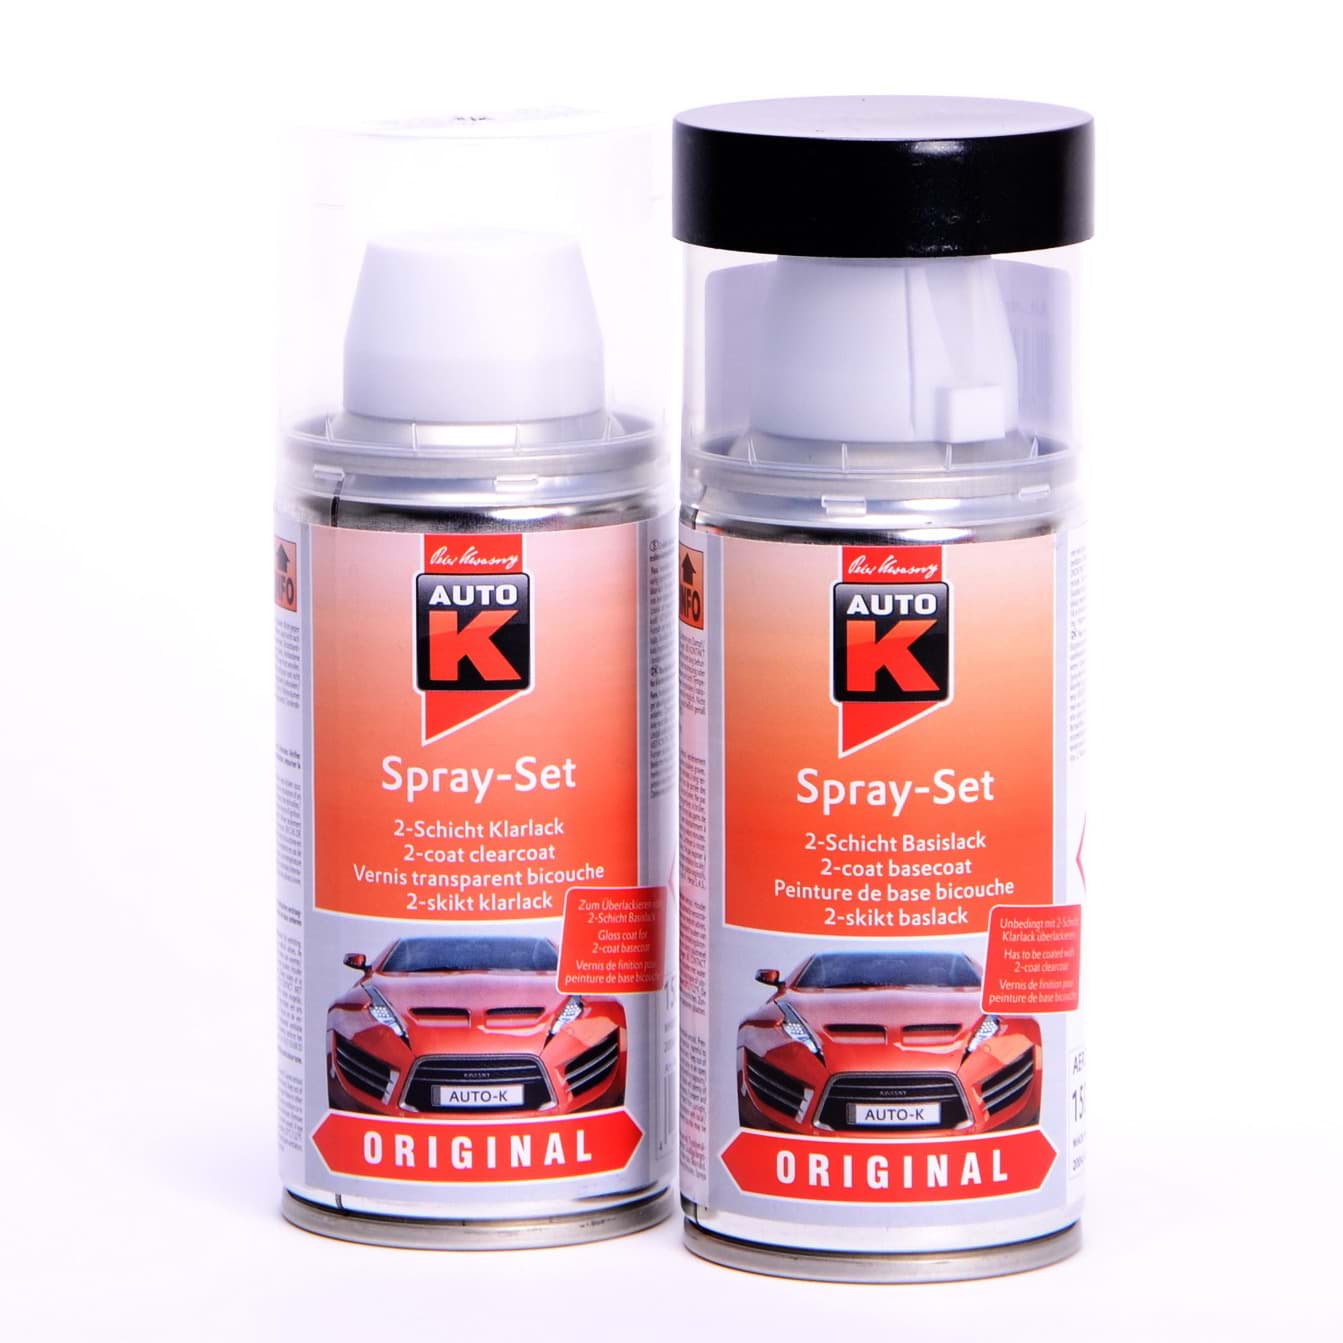 Afbeelding van Auto-K Spray-Set Autolack für Fiat 258 Ginstergelb 24682